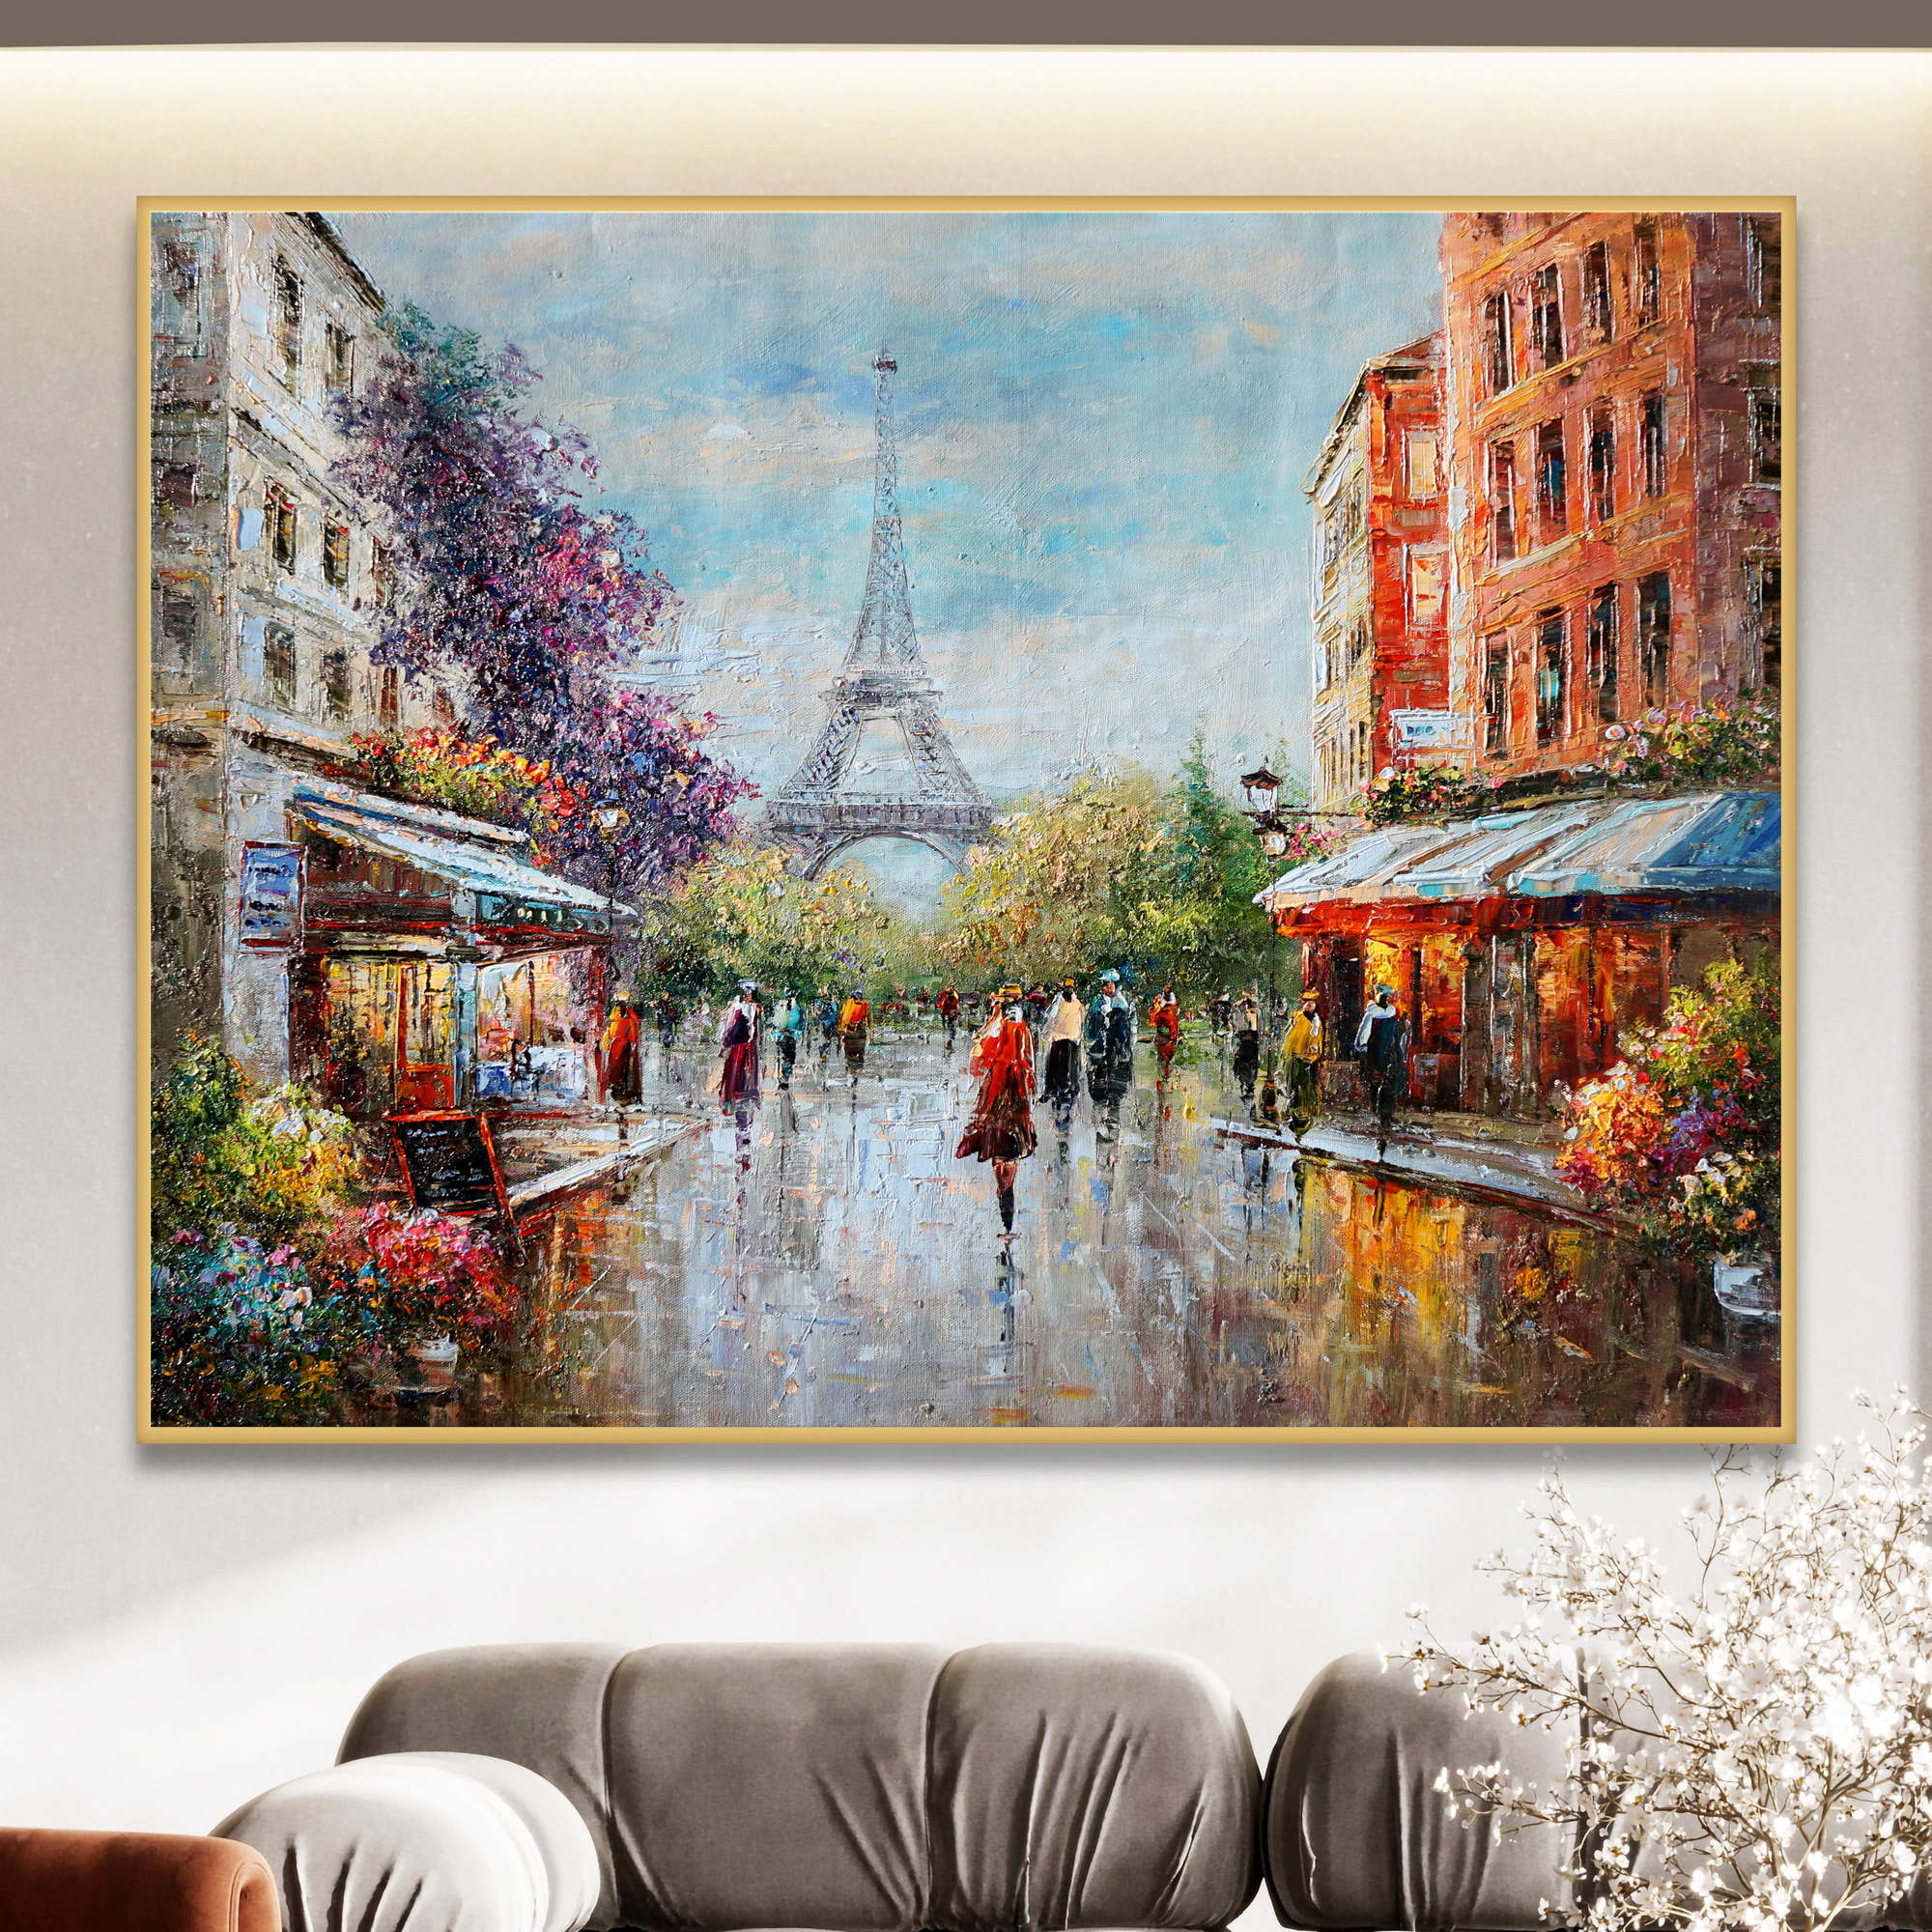 Quadro impressionista di una scena urbana parigina con persone e la Torre Eiffel